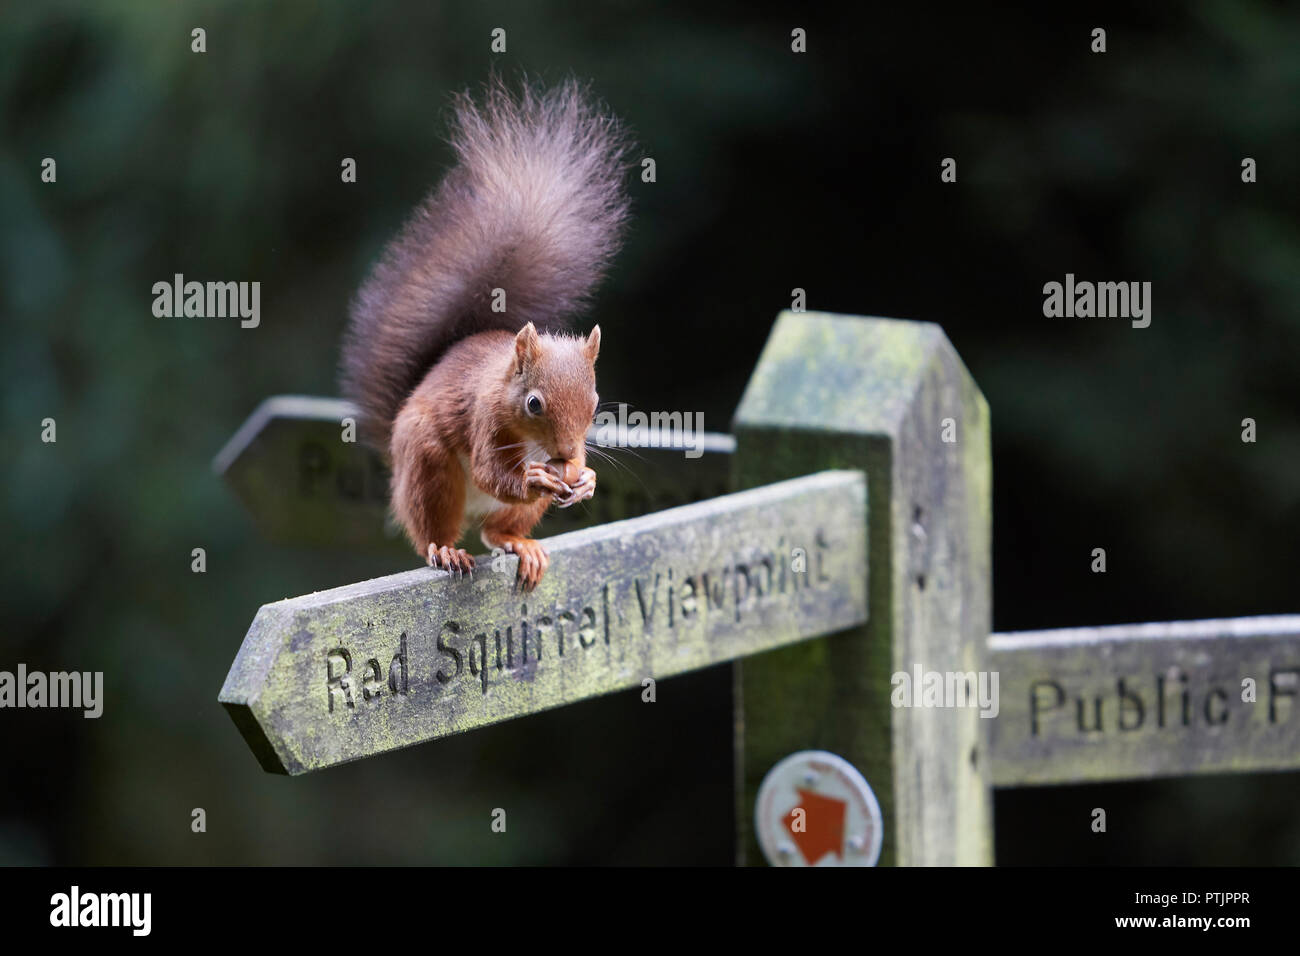 L'Écureuil roux, Sciurus vulgaris, manger une noisette sur un sentier public Vue d'Écureuil rouge sign post, Snaizeholme, près de Hawes, Yorkshire Dales Nati Banque D'Images